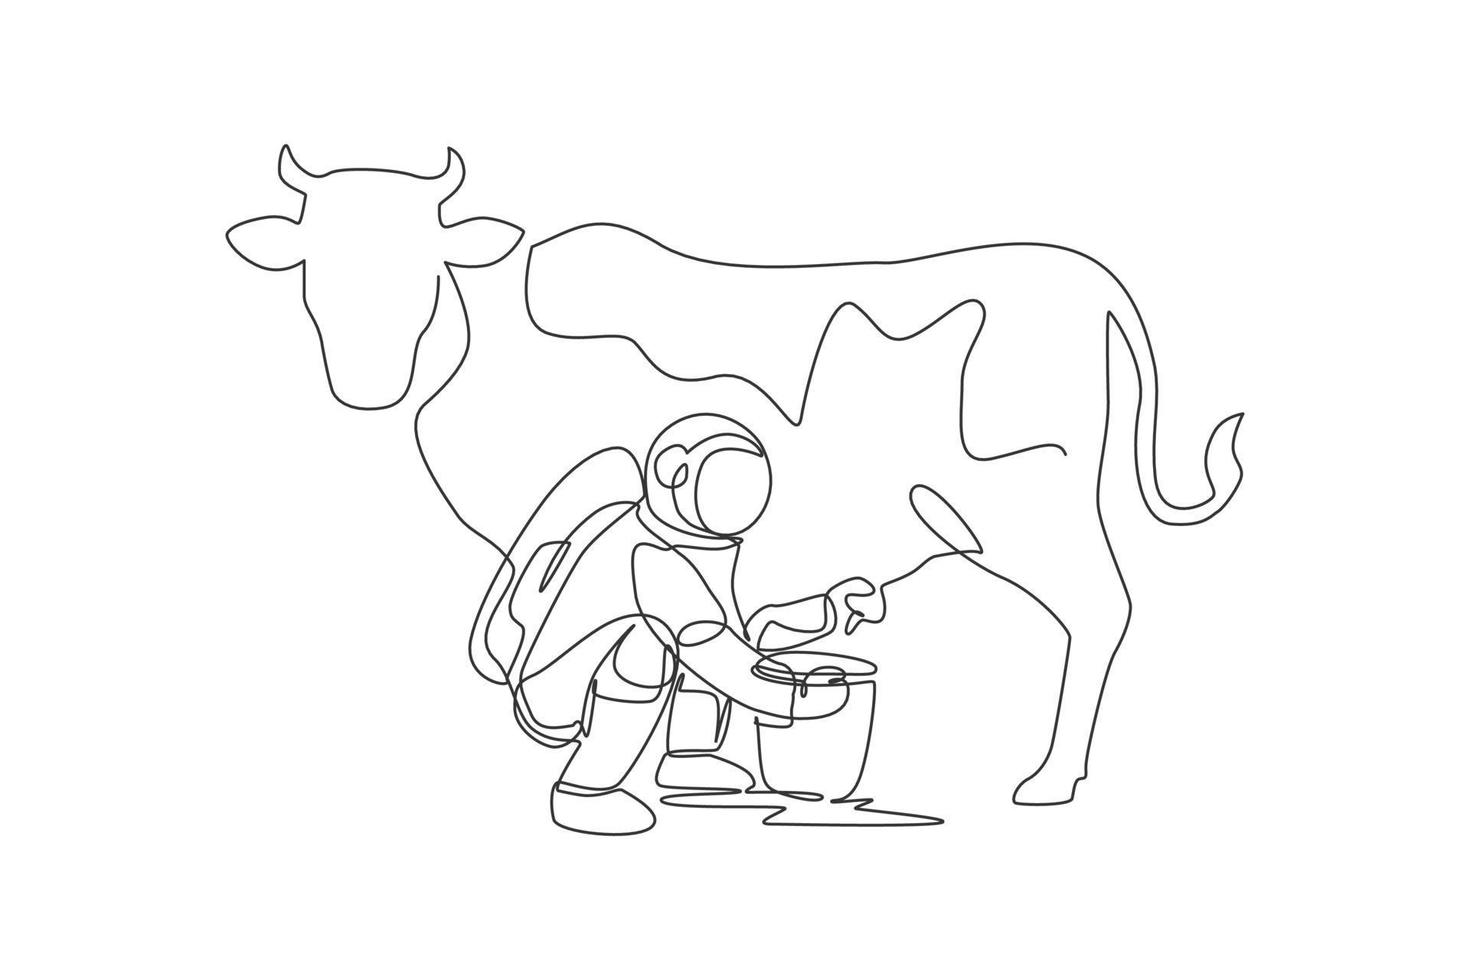 un dessin au trait continu d'un astronaute de l'espace s'accroupissant sur une vache à traire et mis dans un bidon de lait dans un seau à la surface de la lune. concept d'astronaute agricole dans l'espace lointain. illustration vectorielle de dessin à une seule ligne vecteur